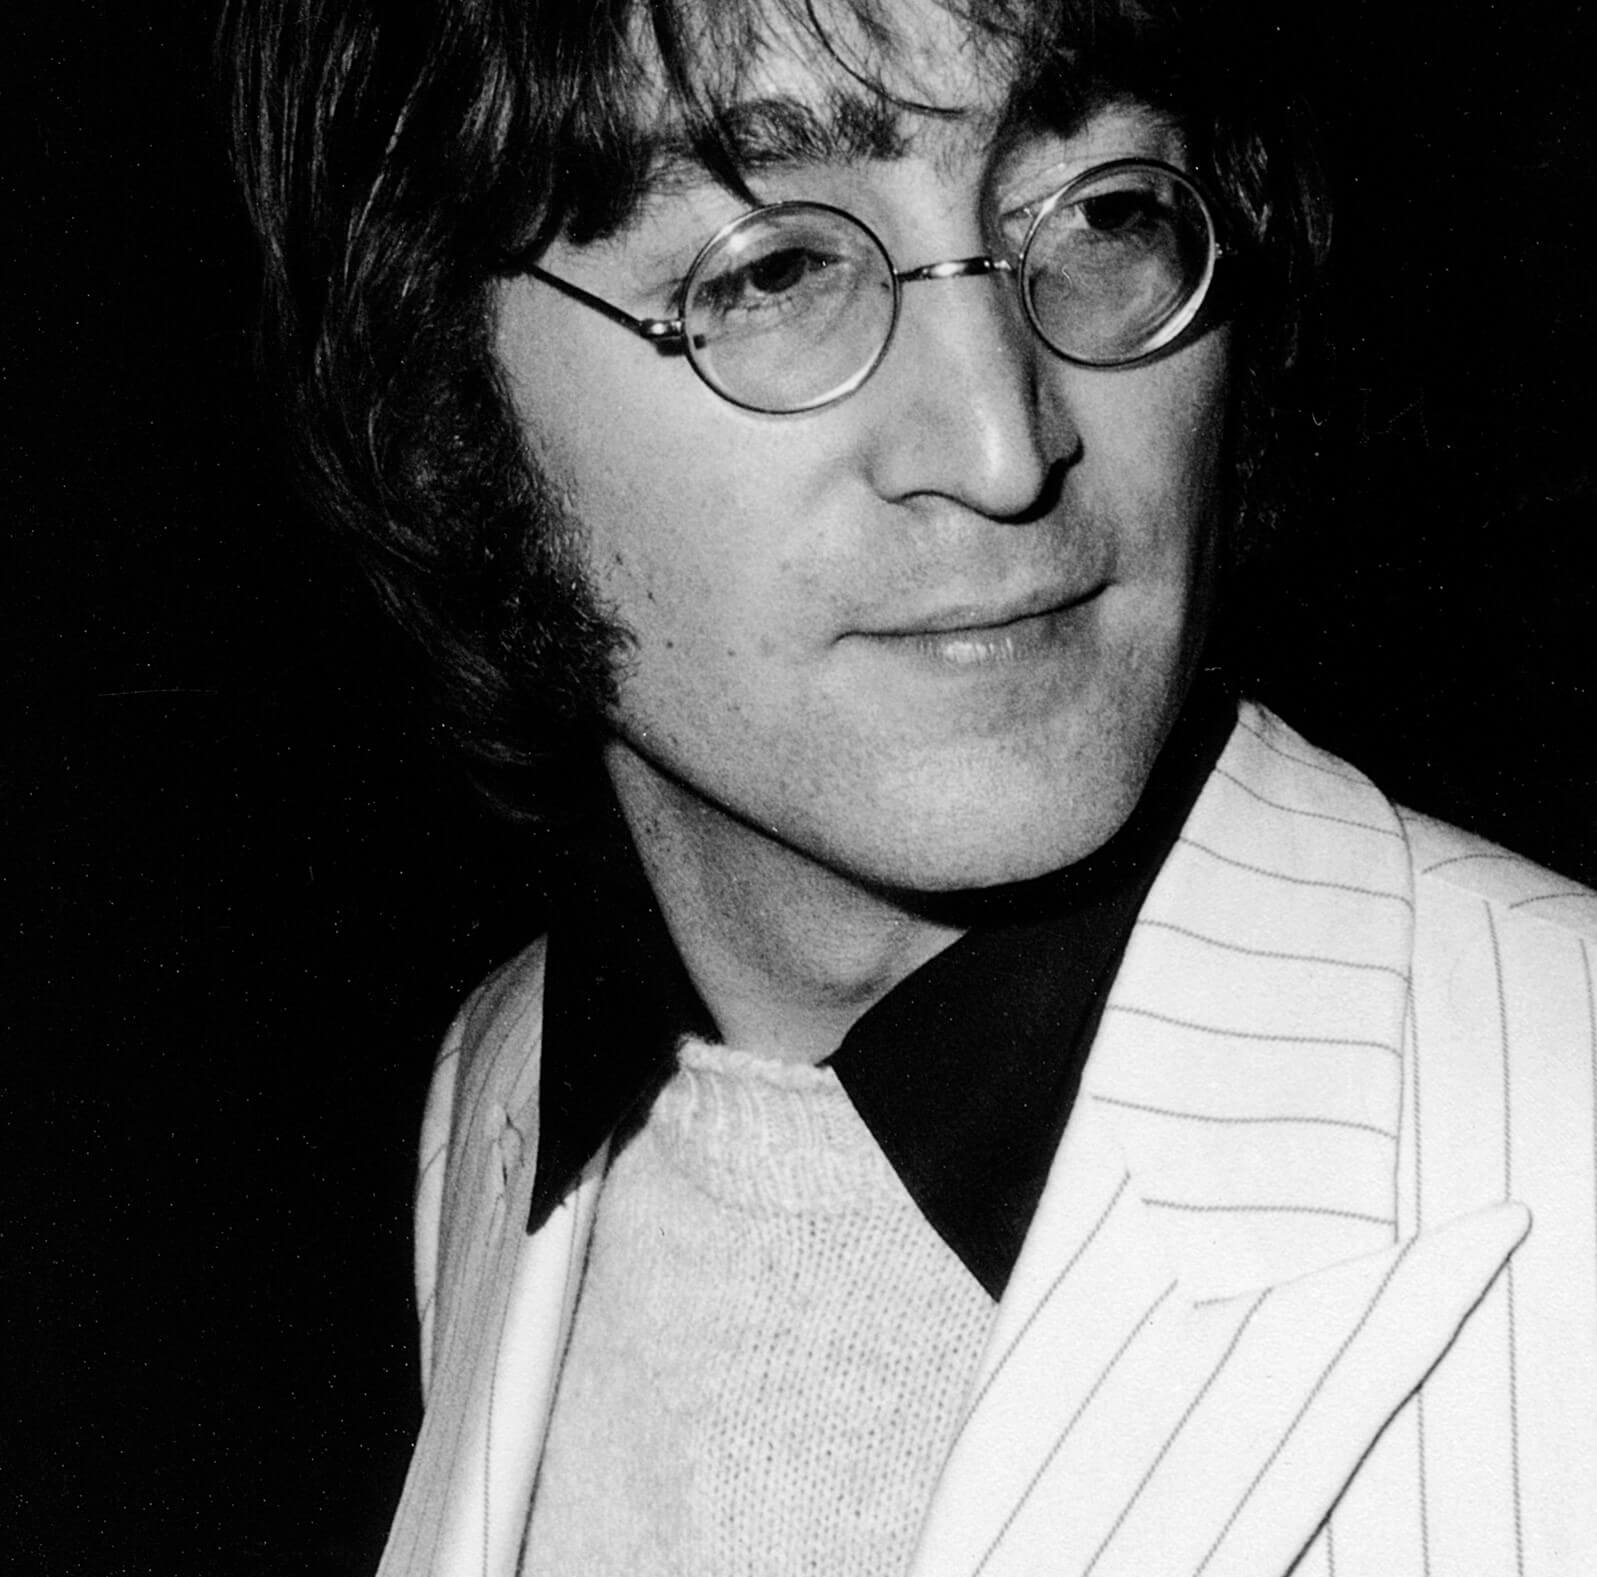 The Beatles' John Lennon in black-and-white